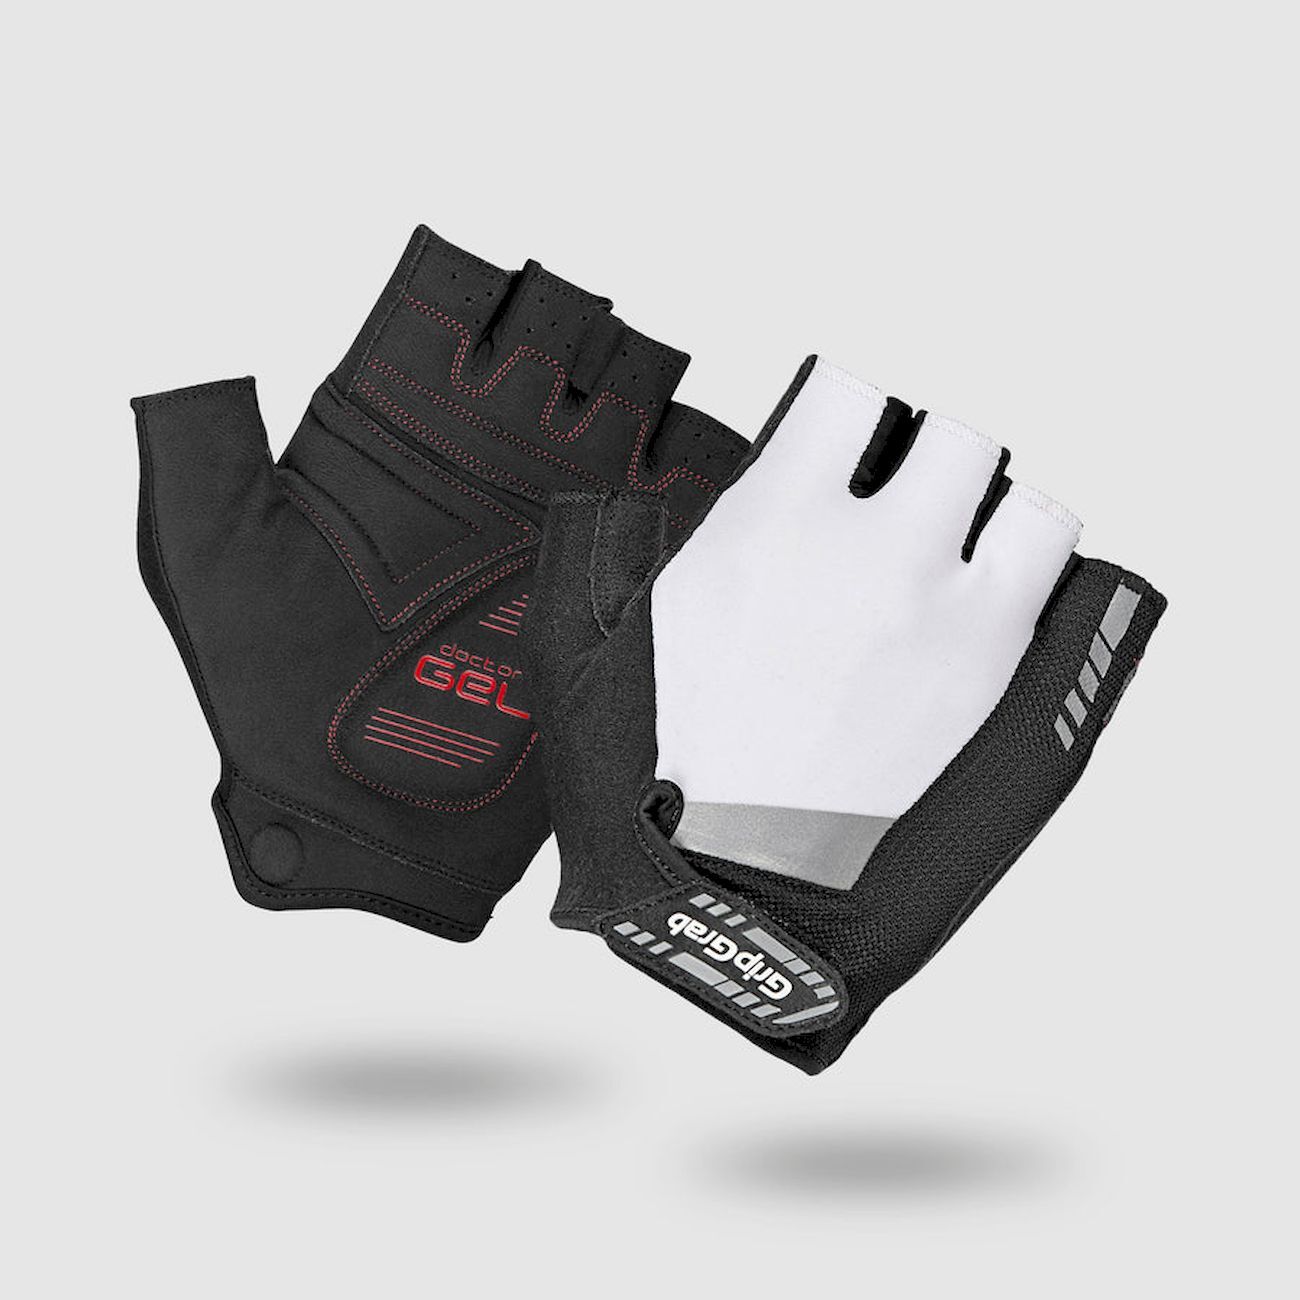 Grip Grab SuperGel Padded Gloves - Short finger gloves - Men's